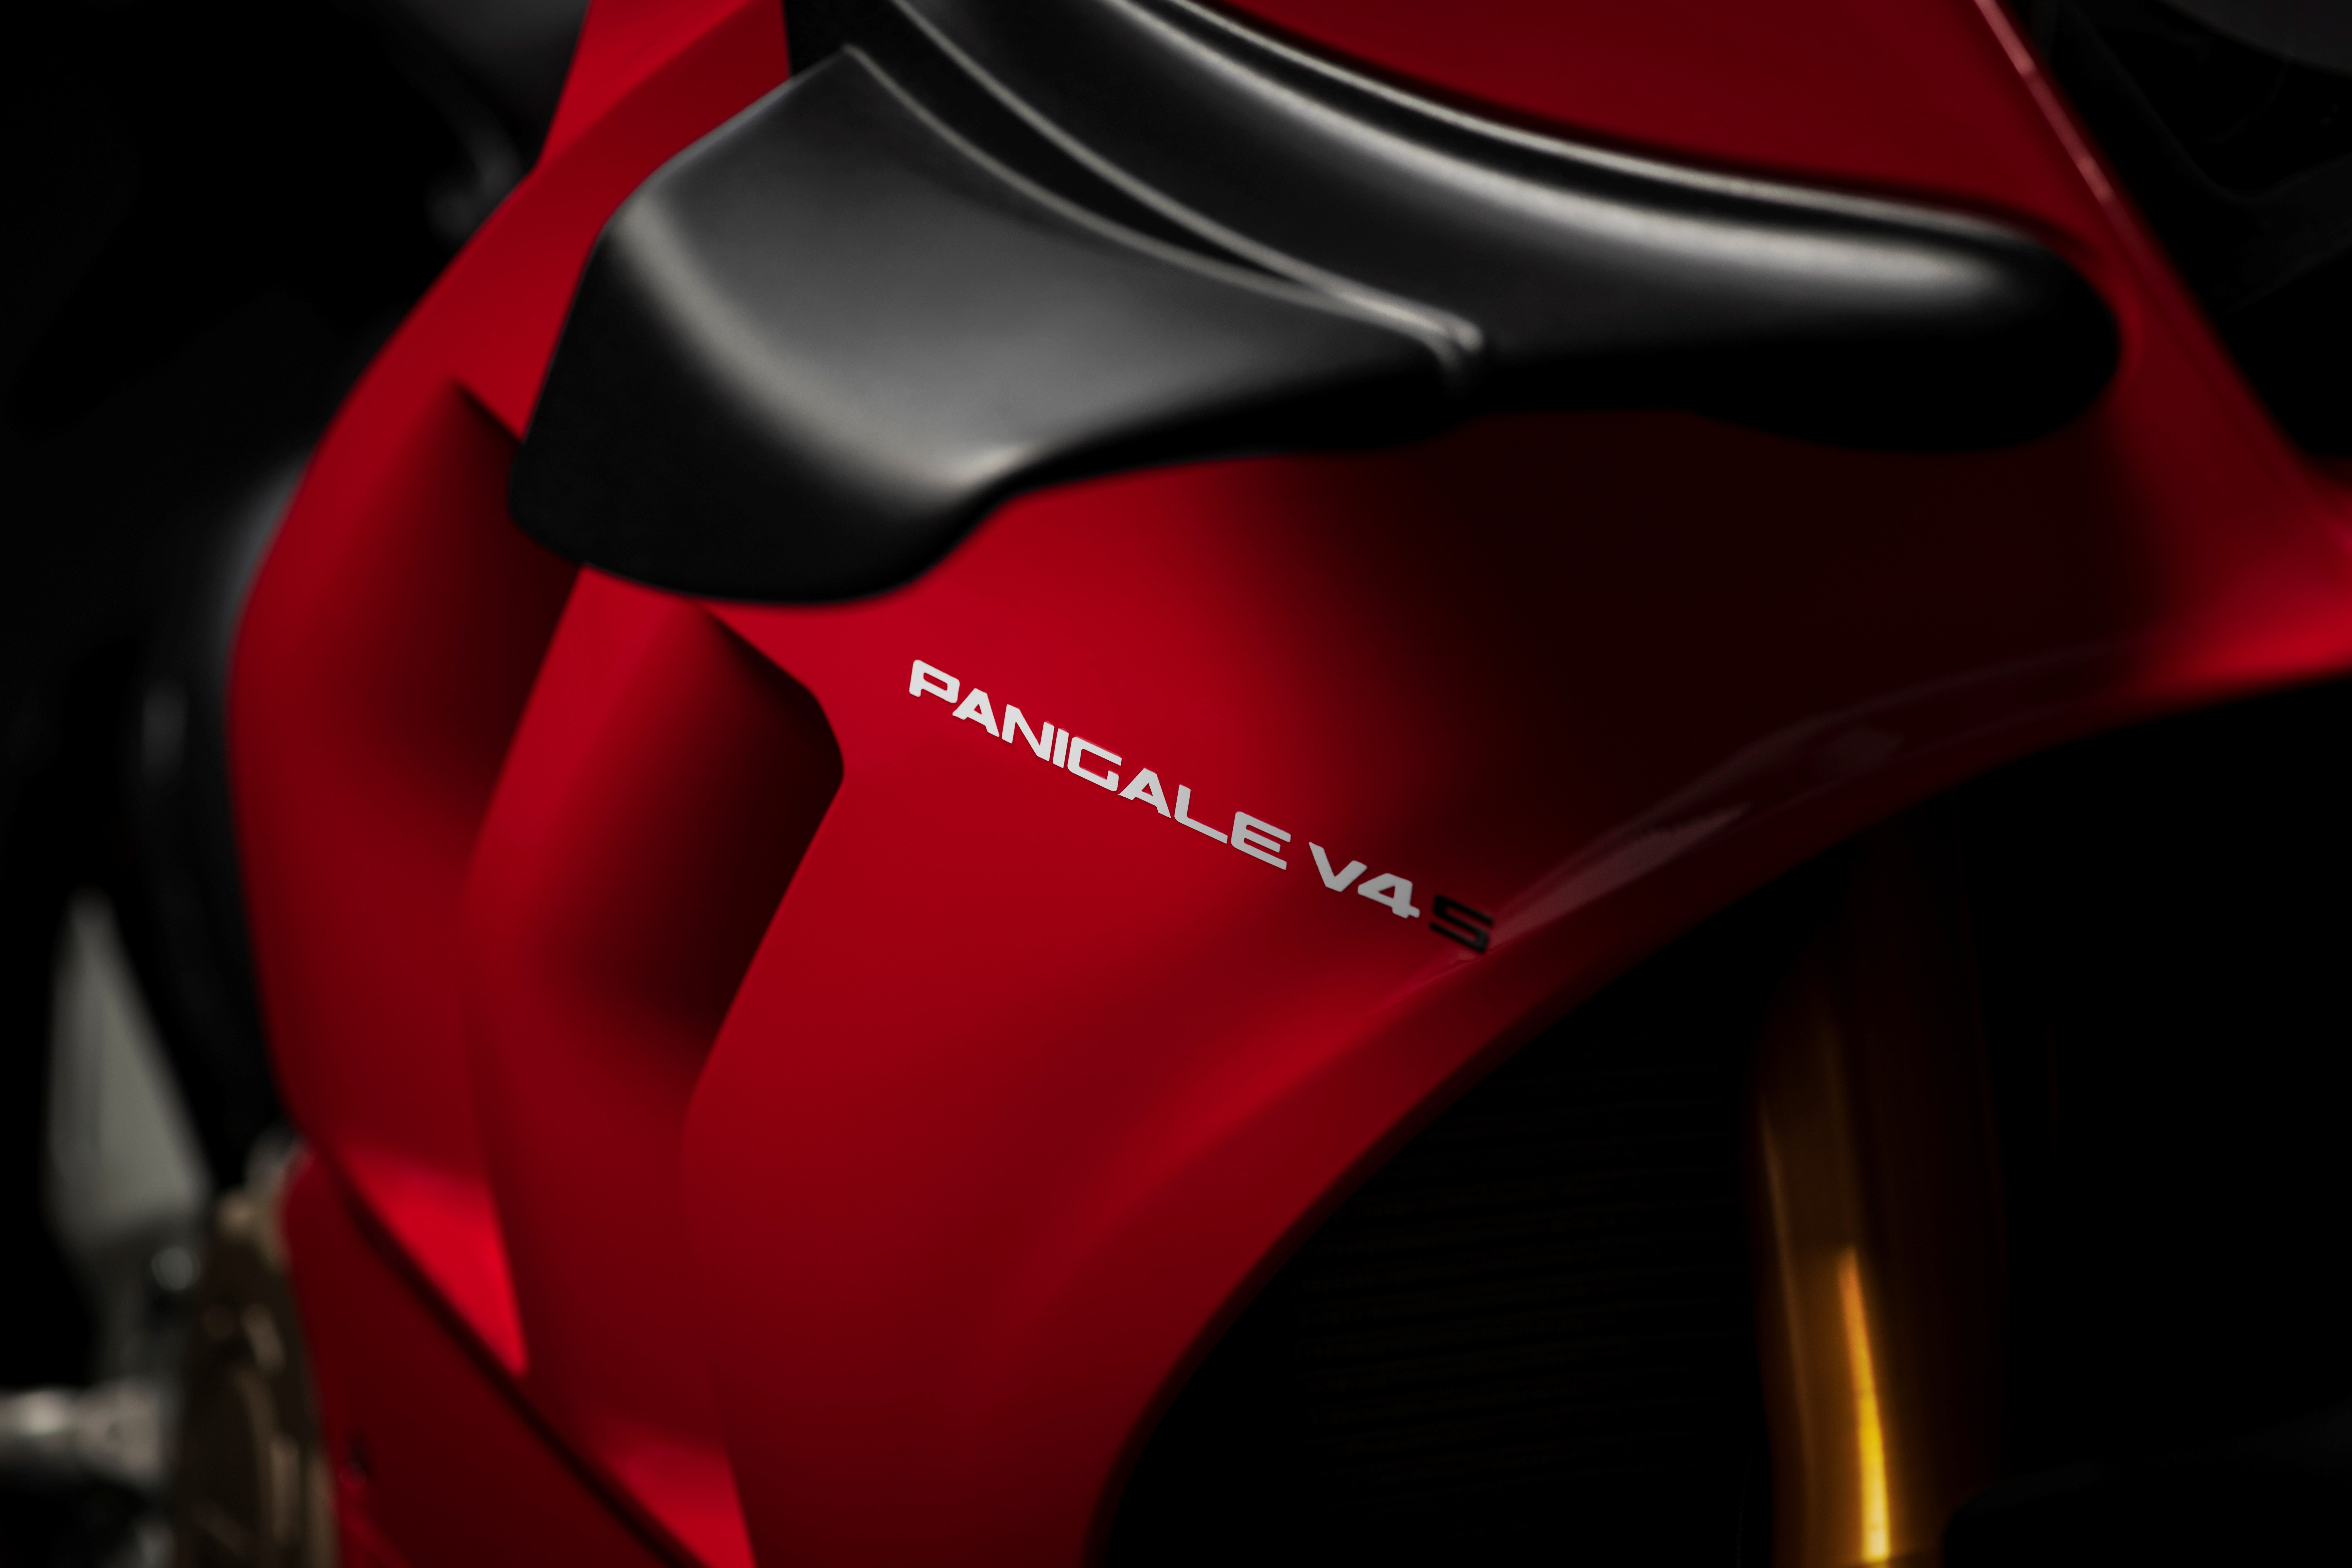 2021 Ducati Panigale V4